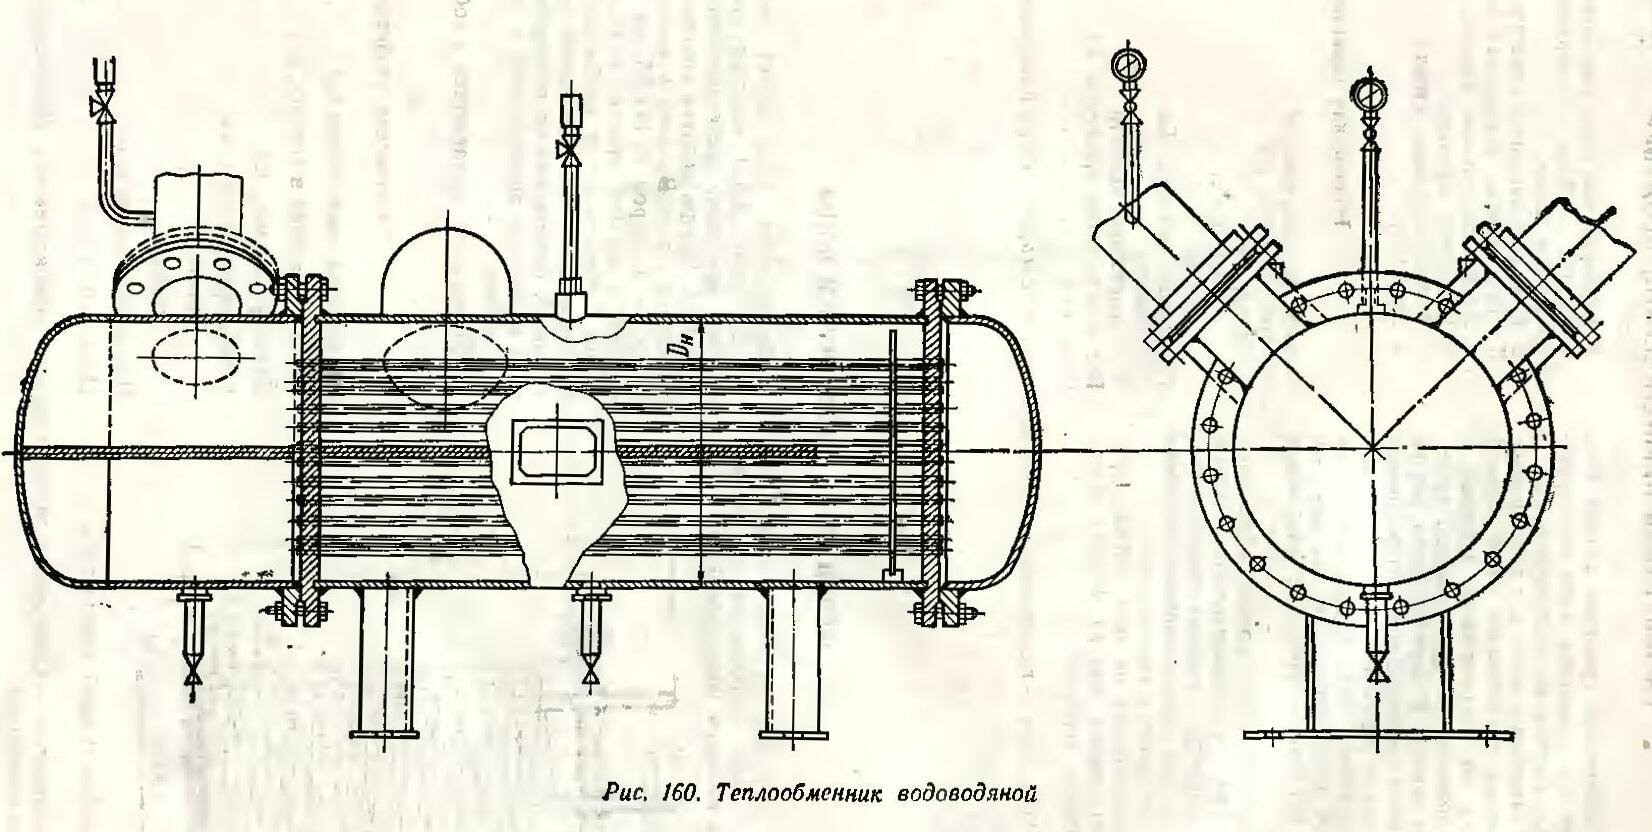 Схема водоводяного теплообменника для подогрева сырой или химически обработанной воды